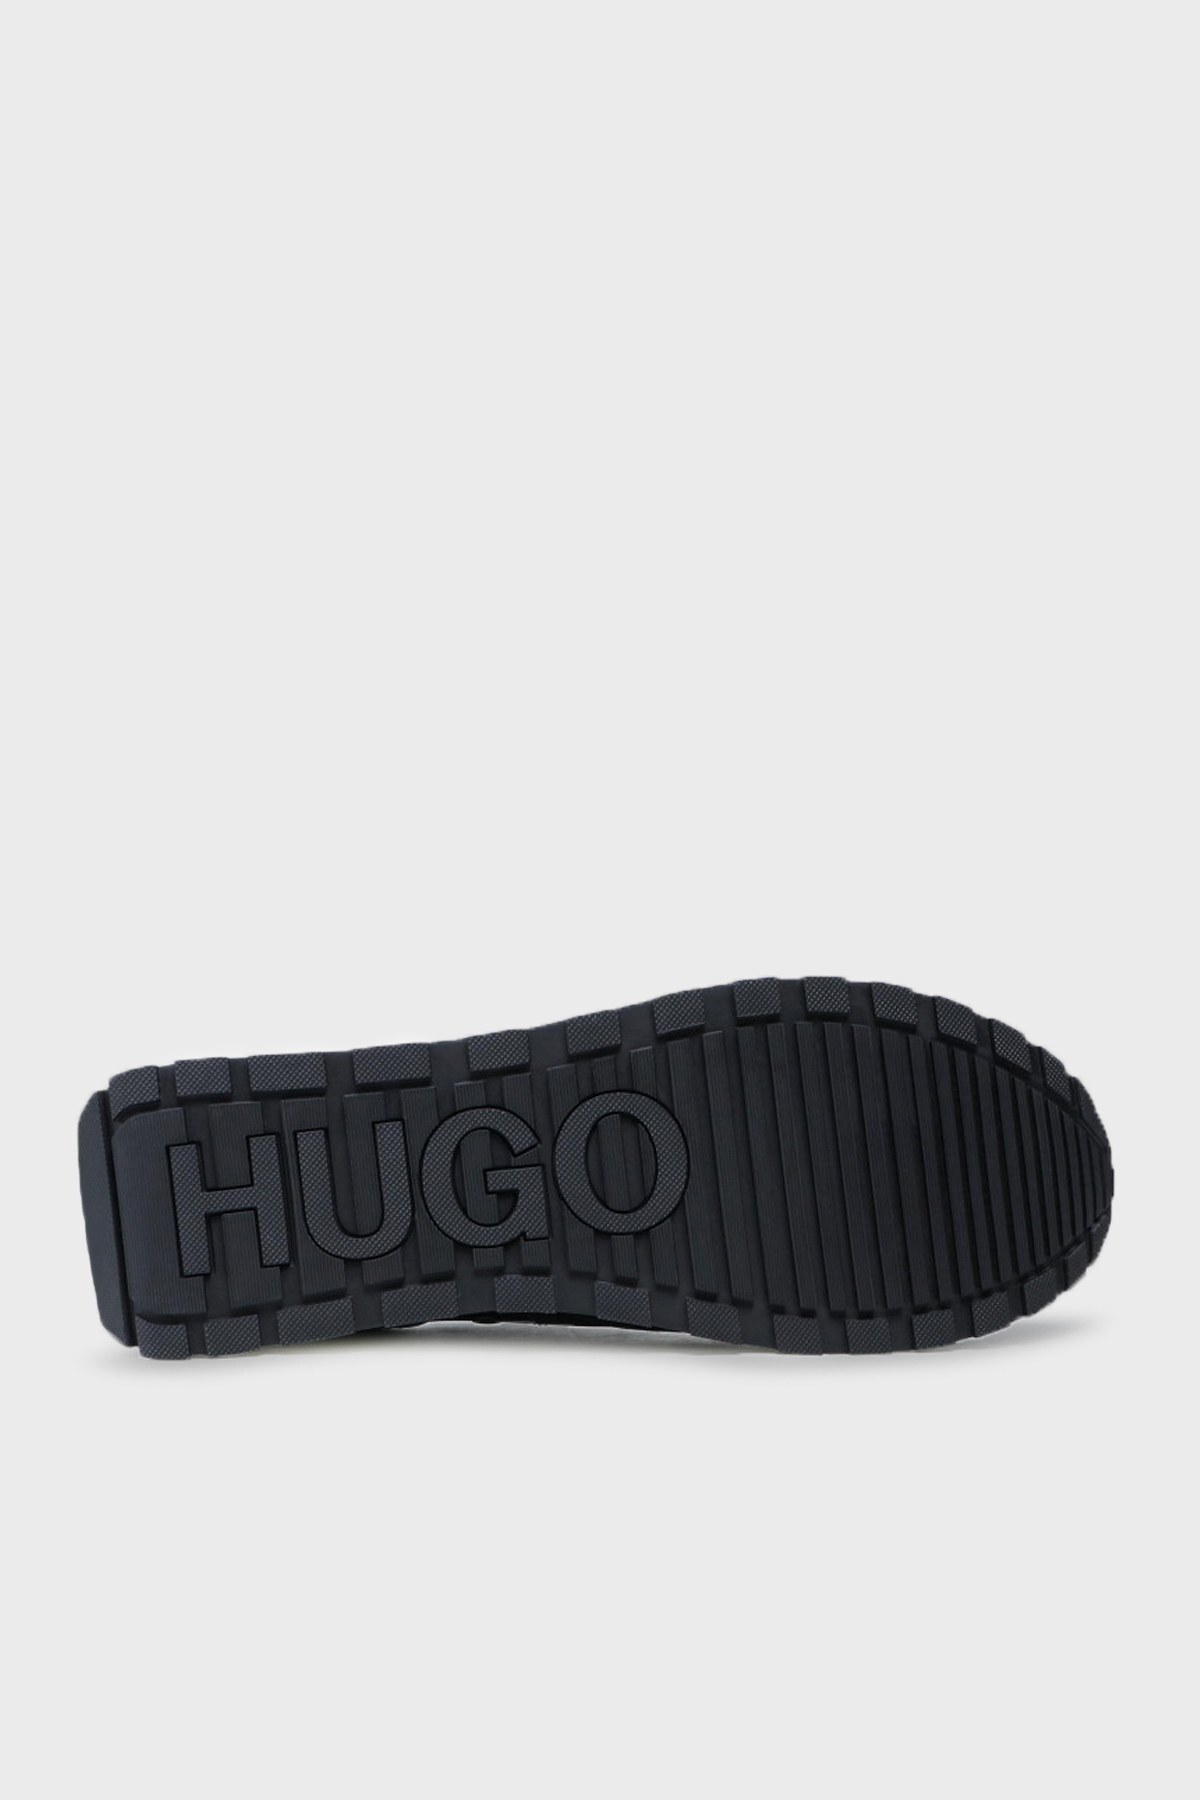 Hugo Logolu Hakiki Deri Sneaker Erkek Ayakkabı 50451740 002 SİYAH-GRİ